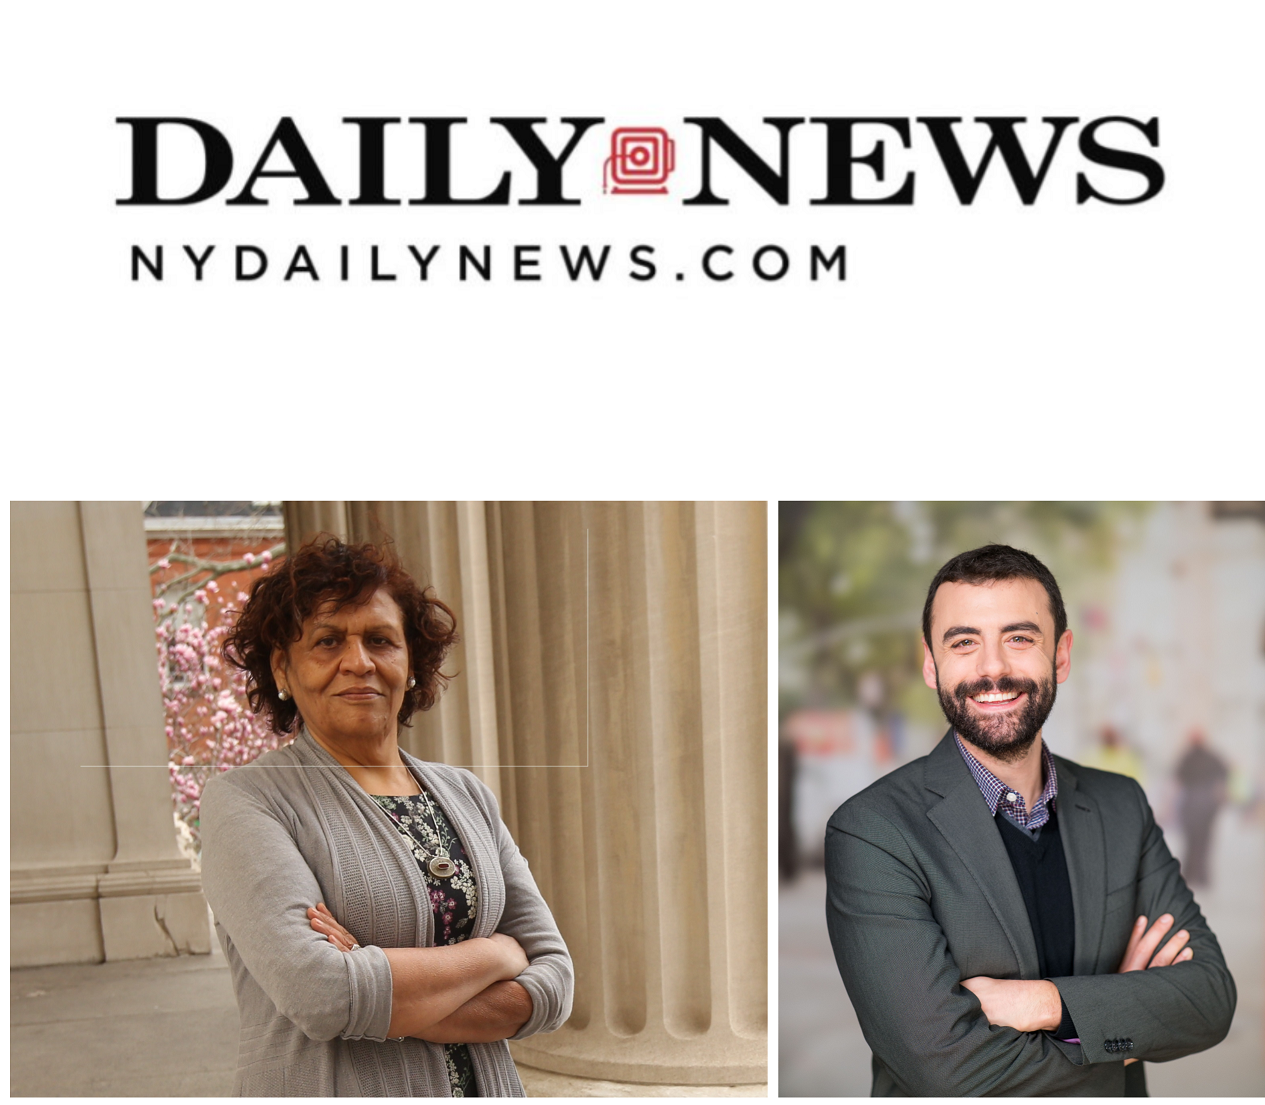 ny daily news logo and photo of both authors